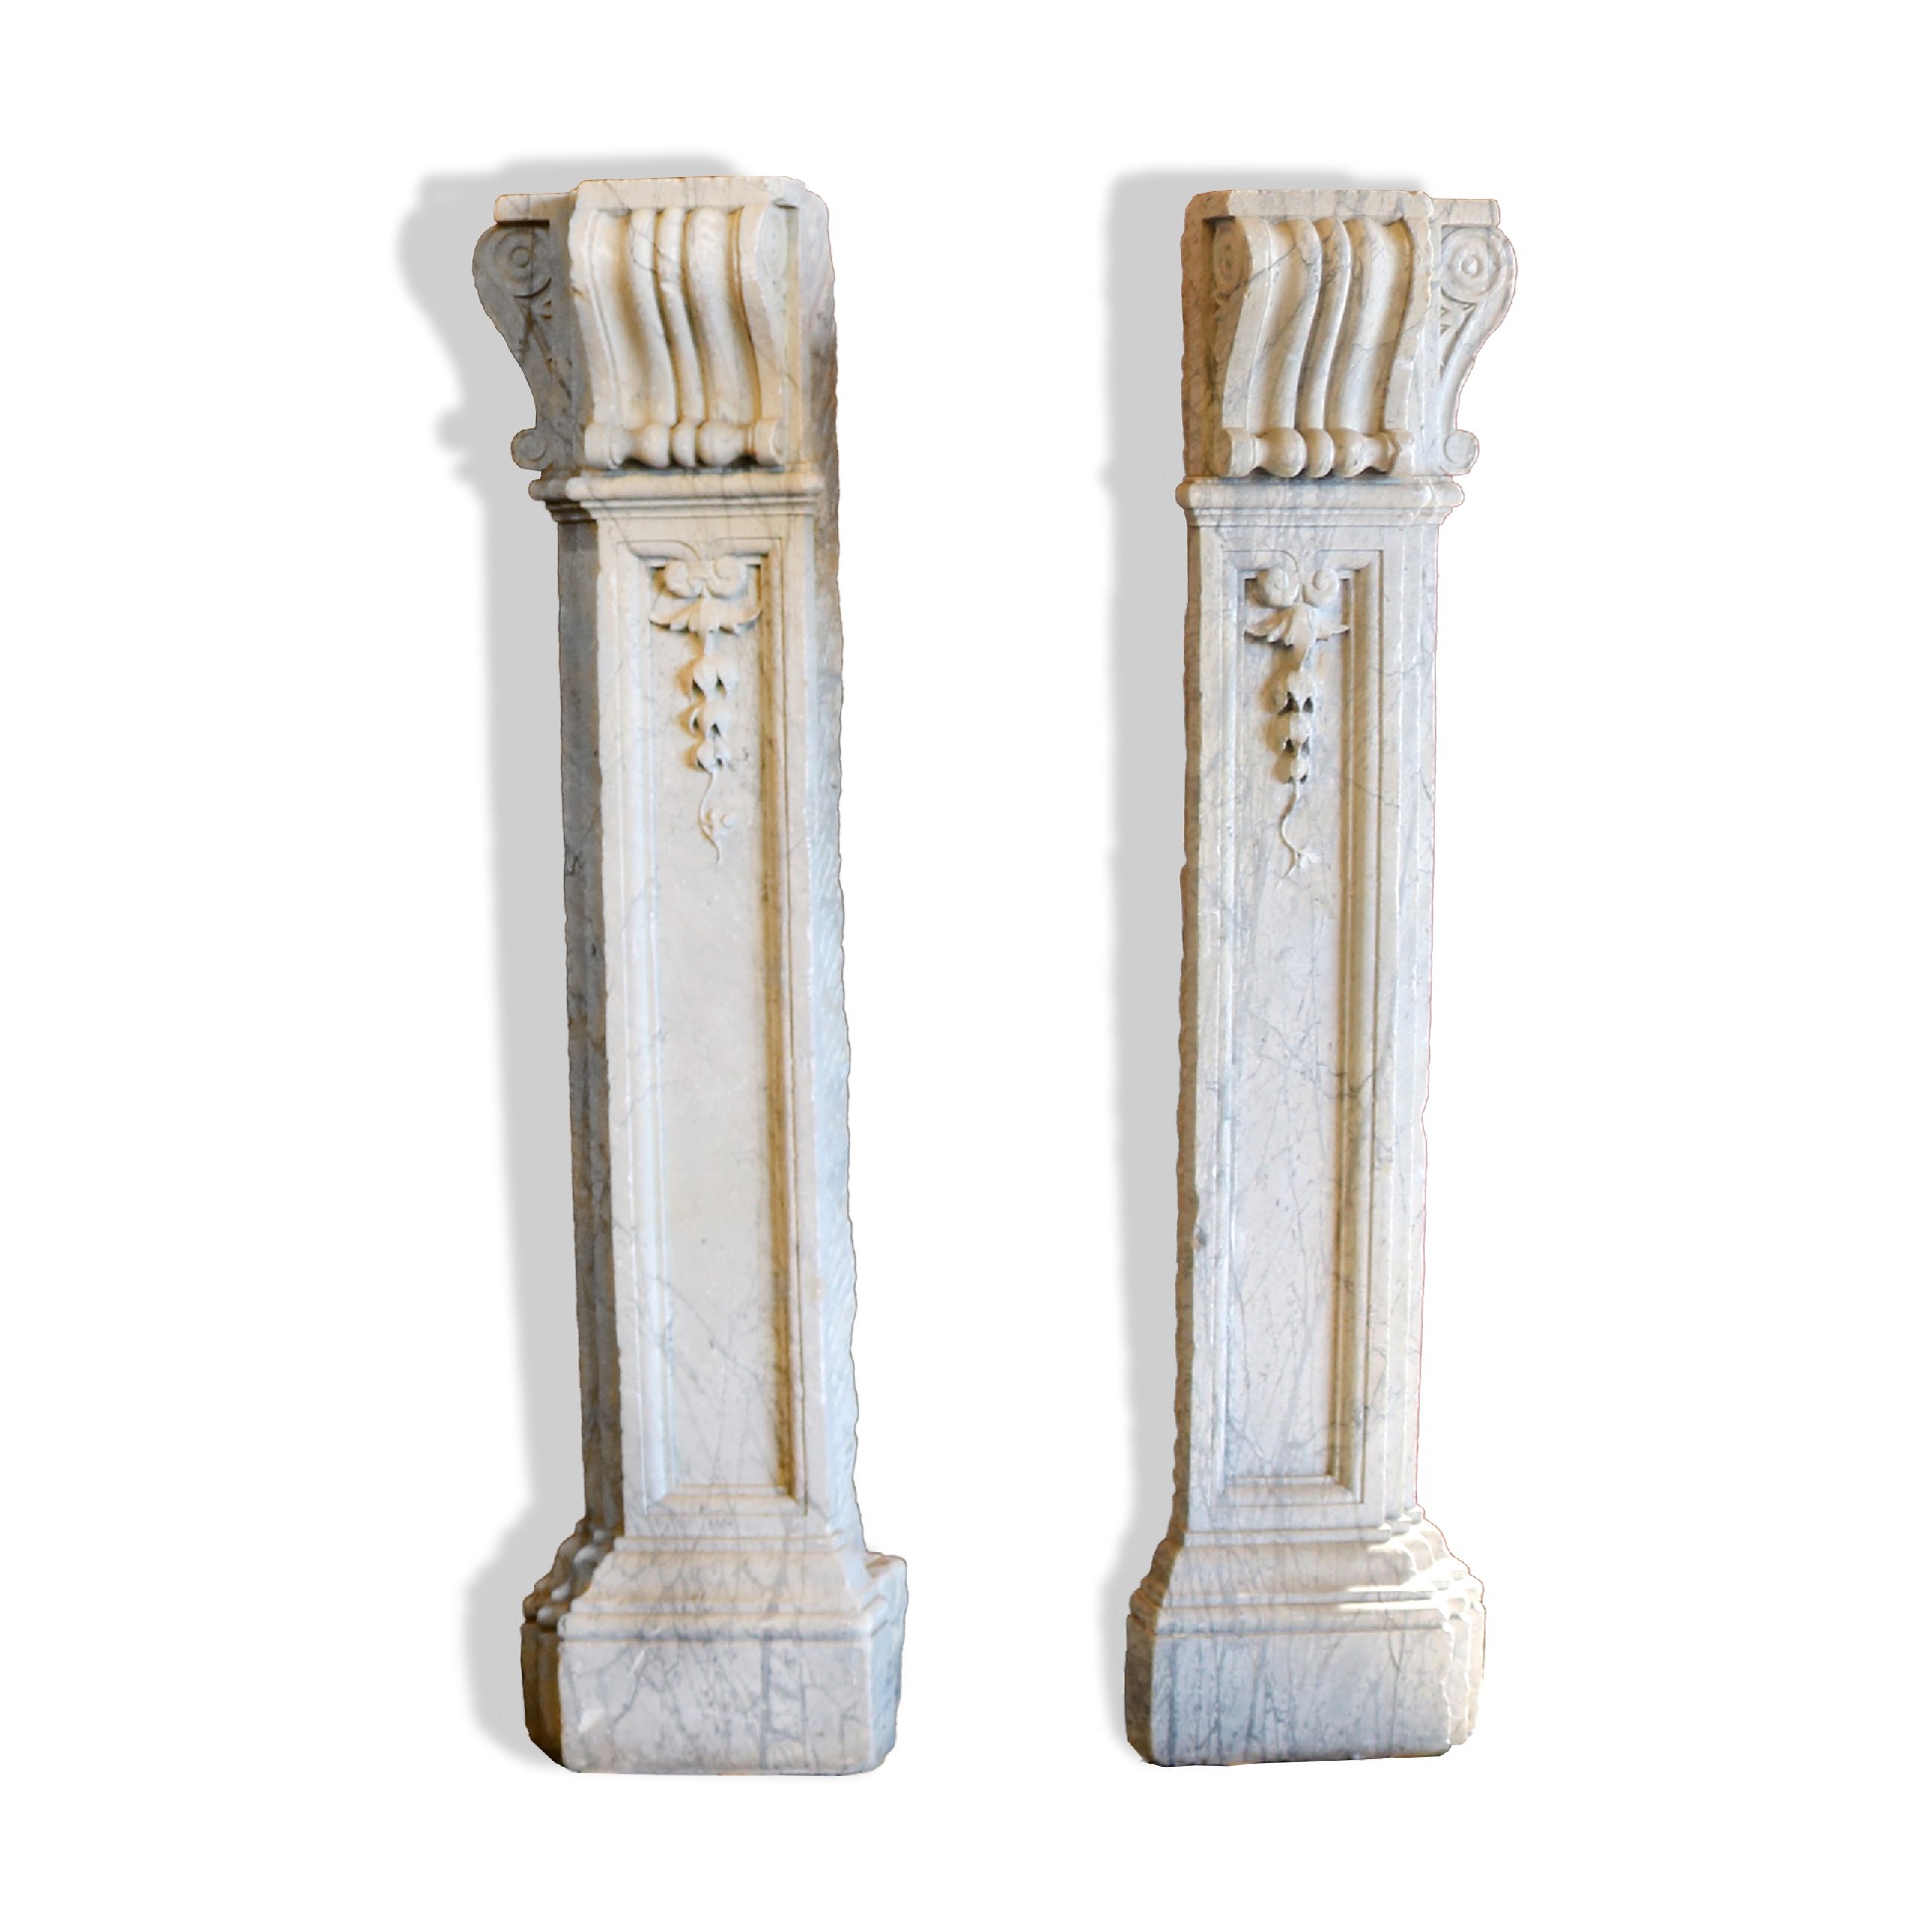 Coppia di lesene in marmo - Colonne antiche - Architettura - Prodotti - Antichità Fiorillo